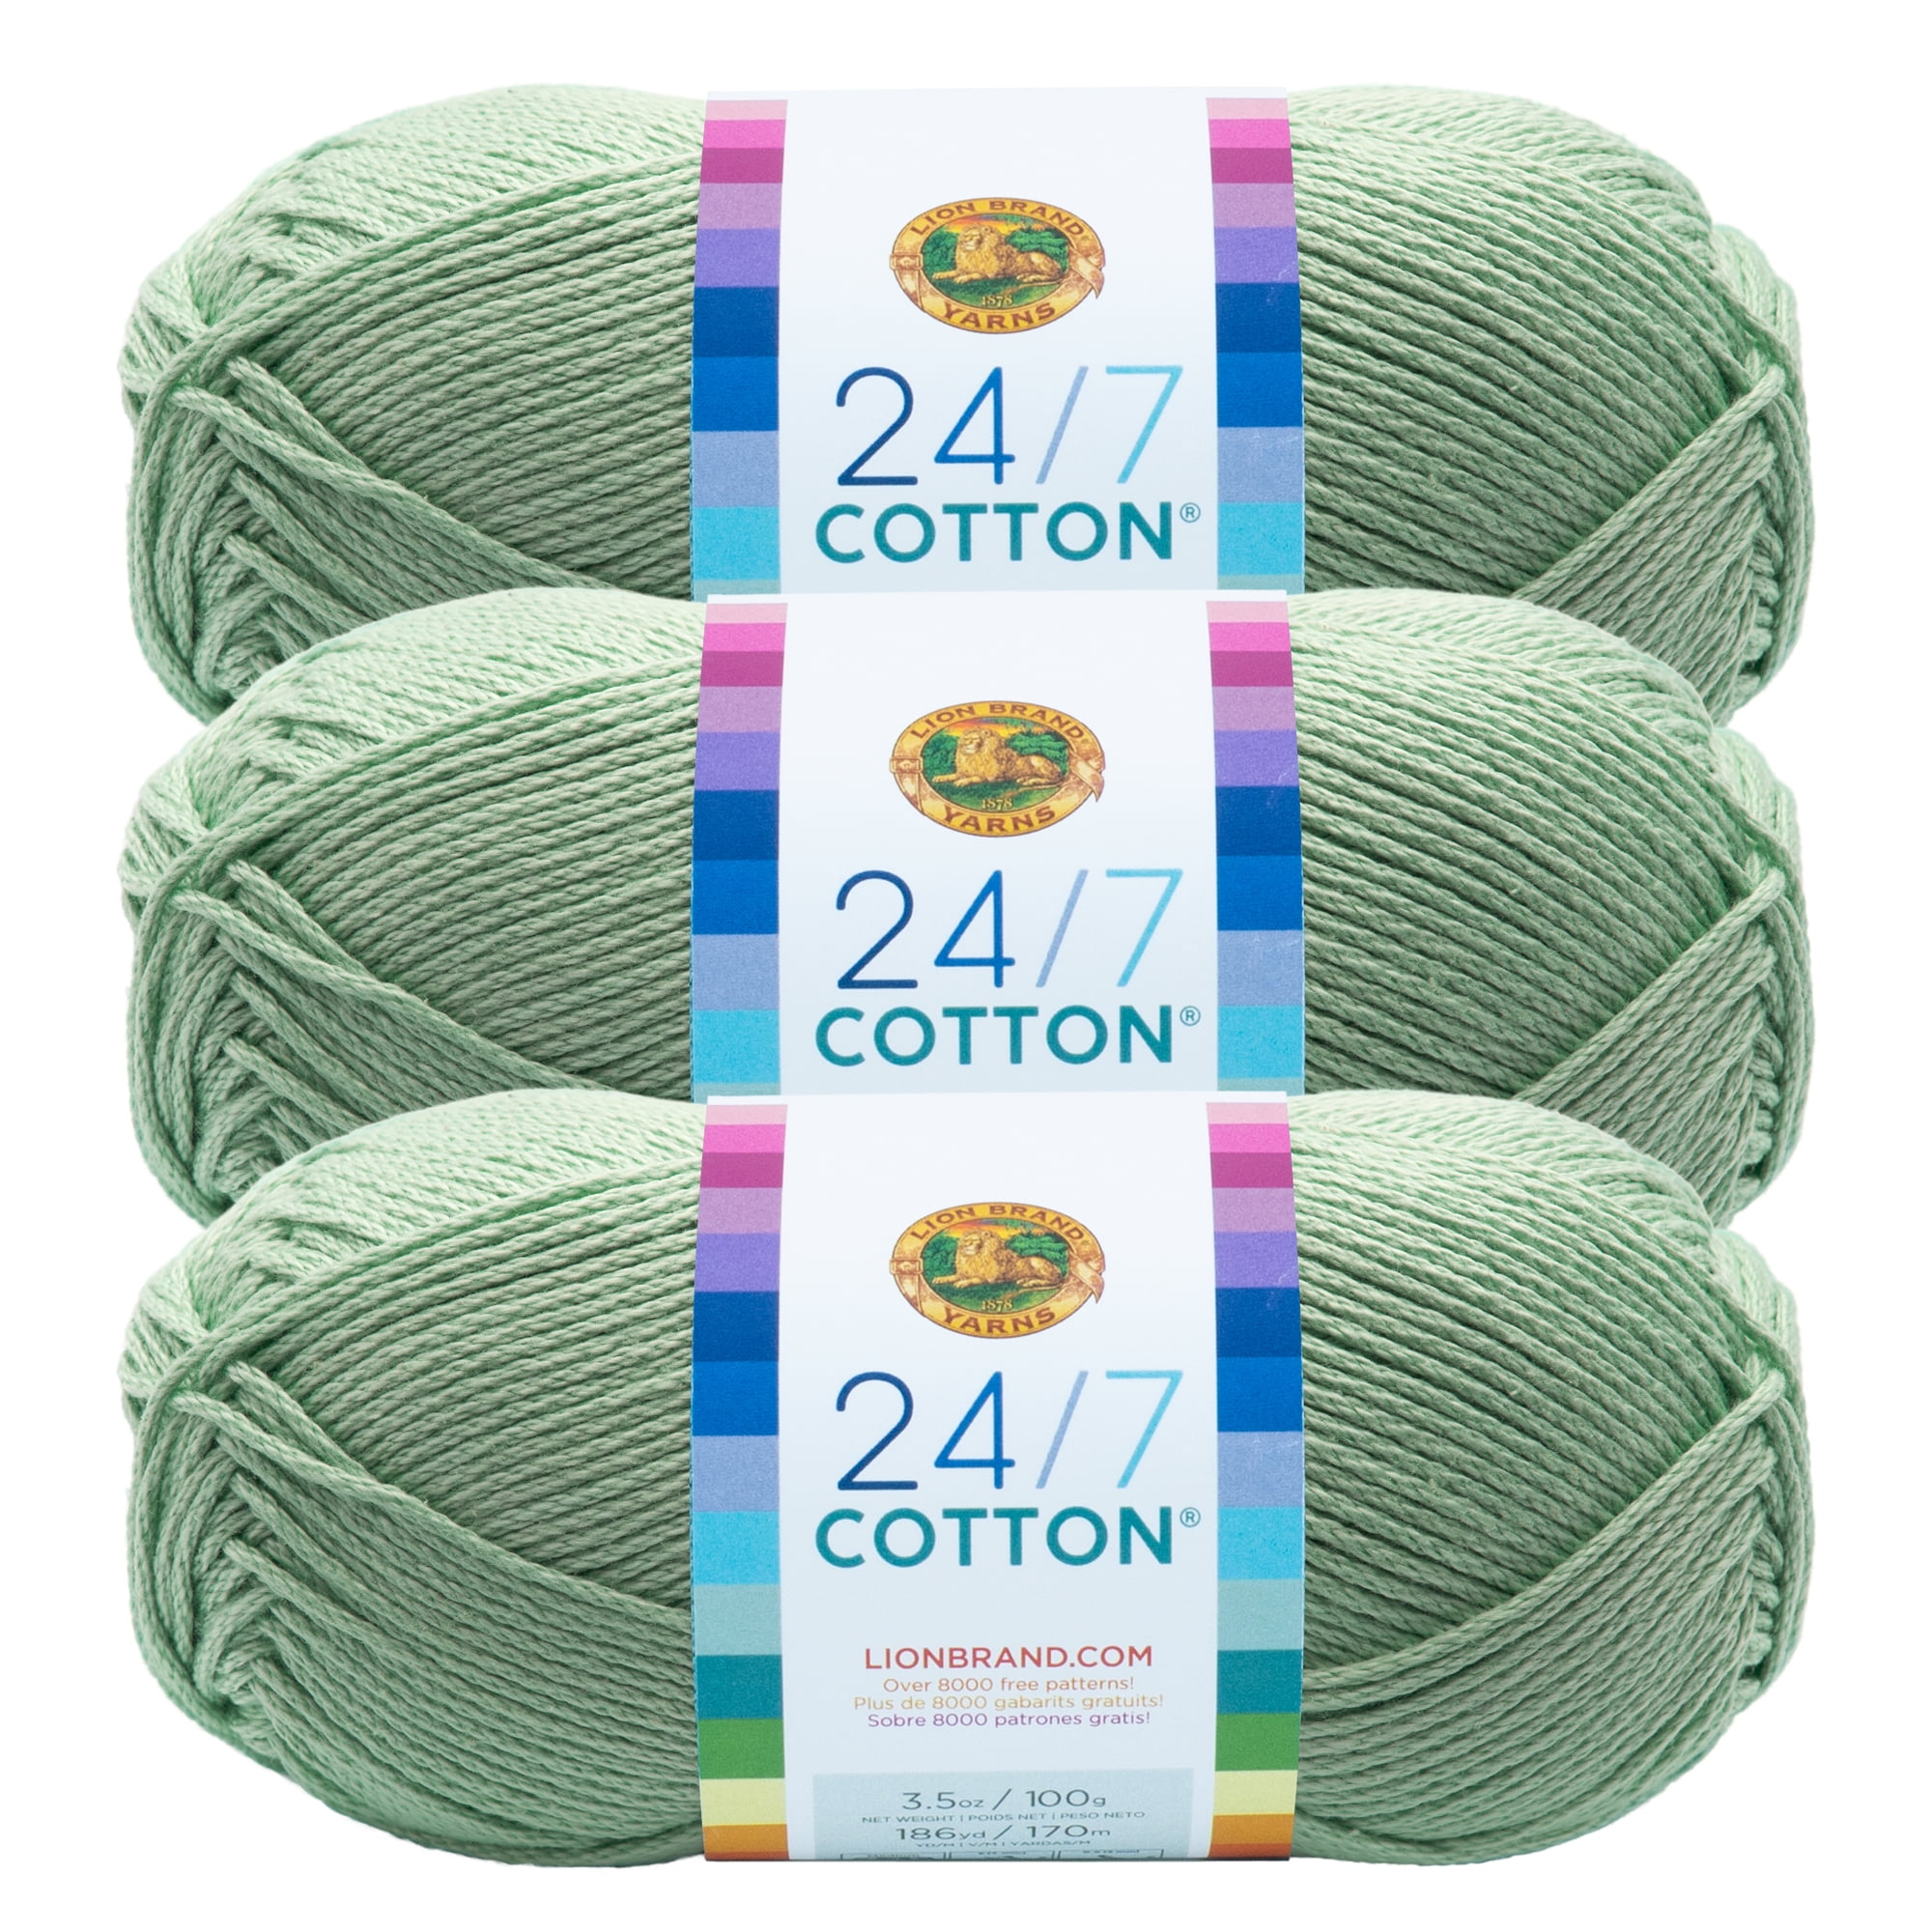 Cotton Knitting & Crochet Yarn – Lion Brand Yarn